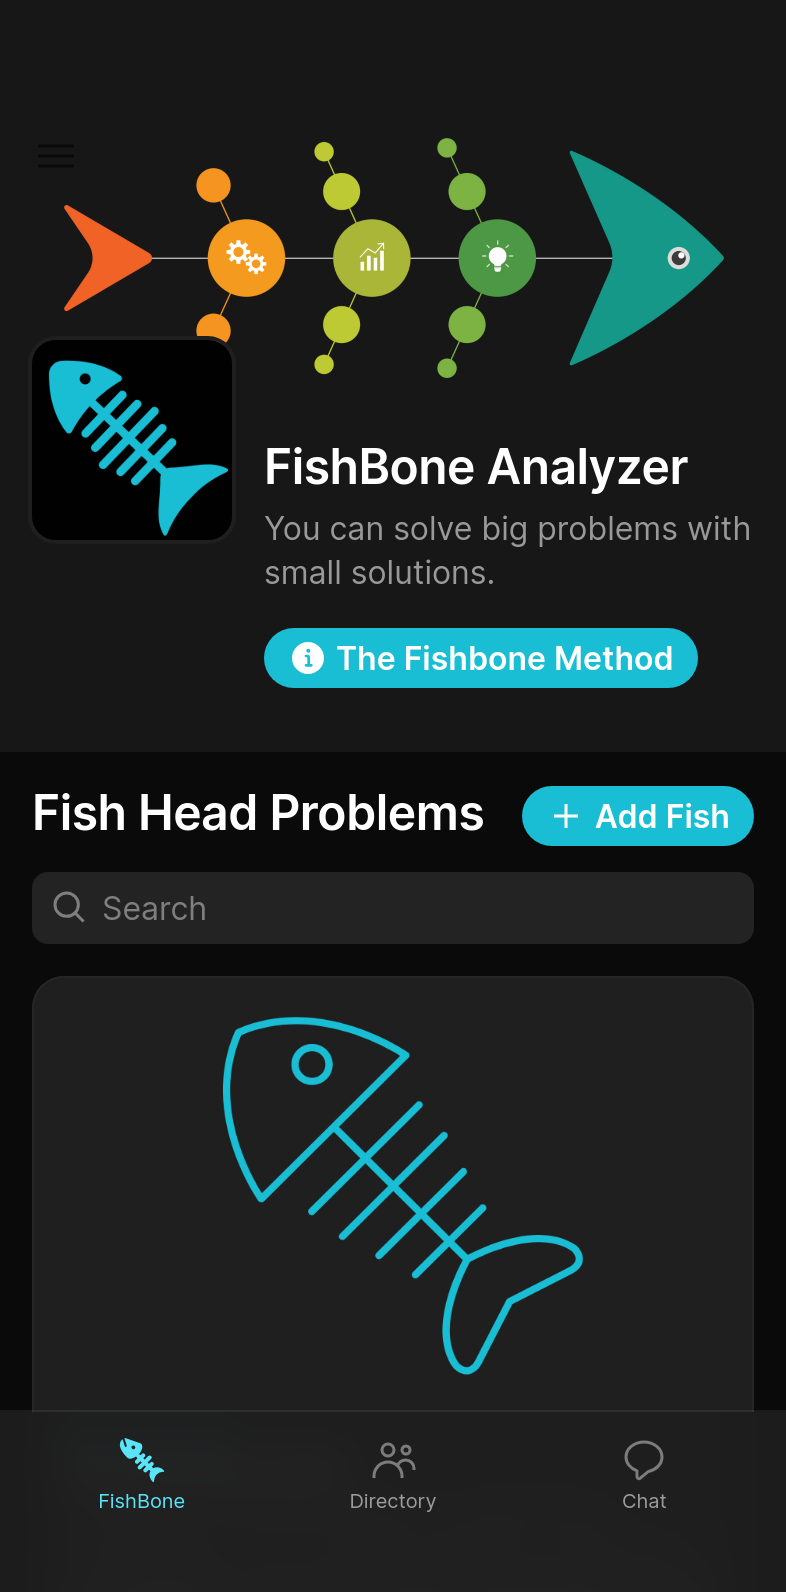 FishBone Analyzer